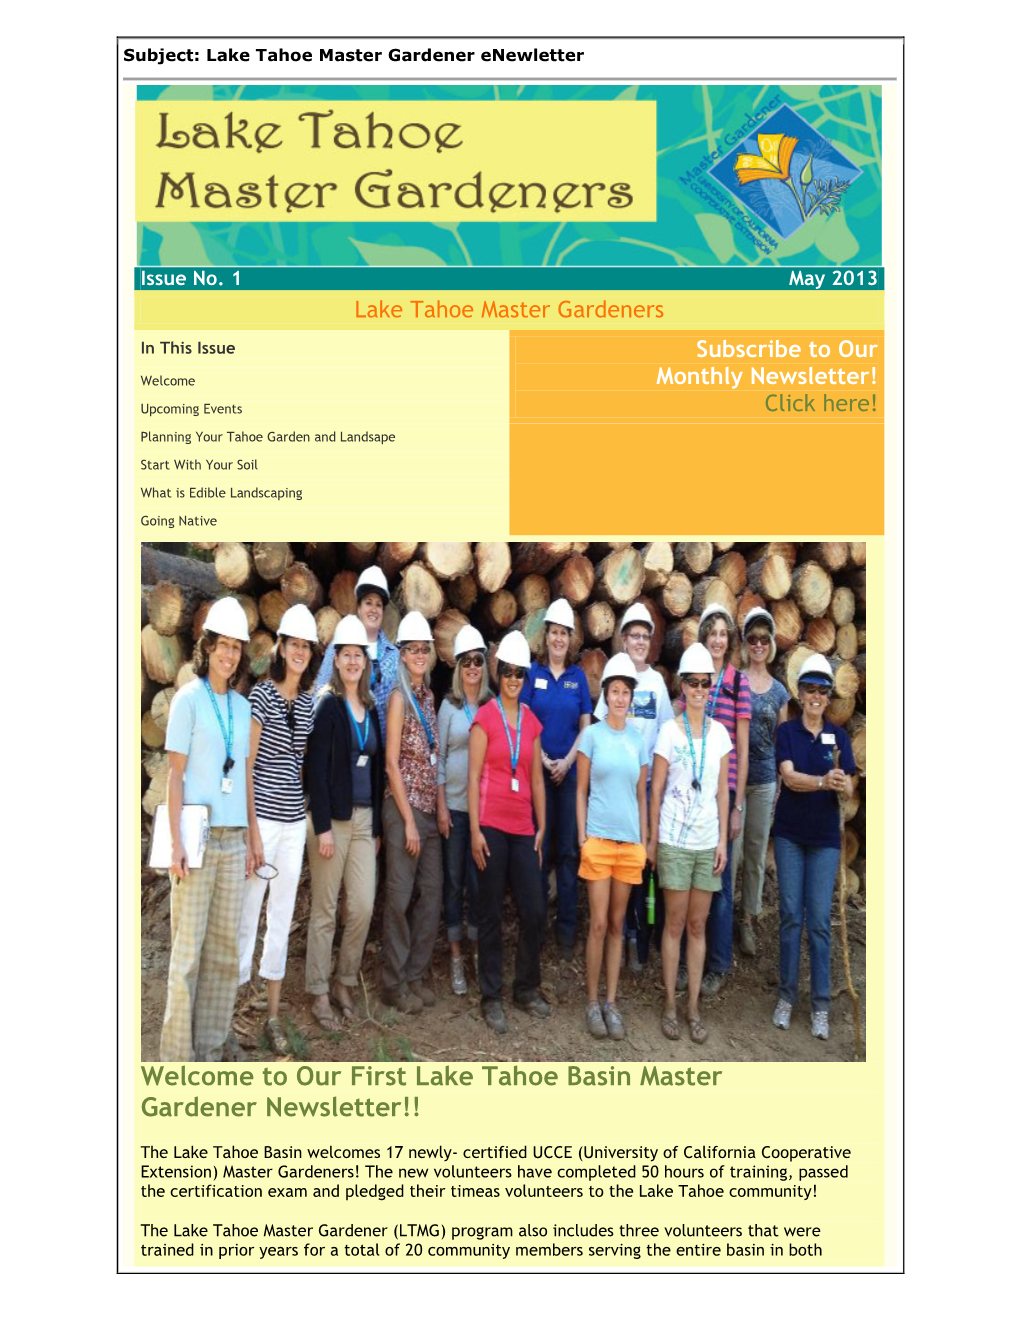 Our First Lake Tahoe Basin Master Gardener Newsletter!!